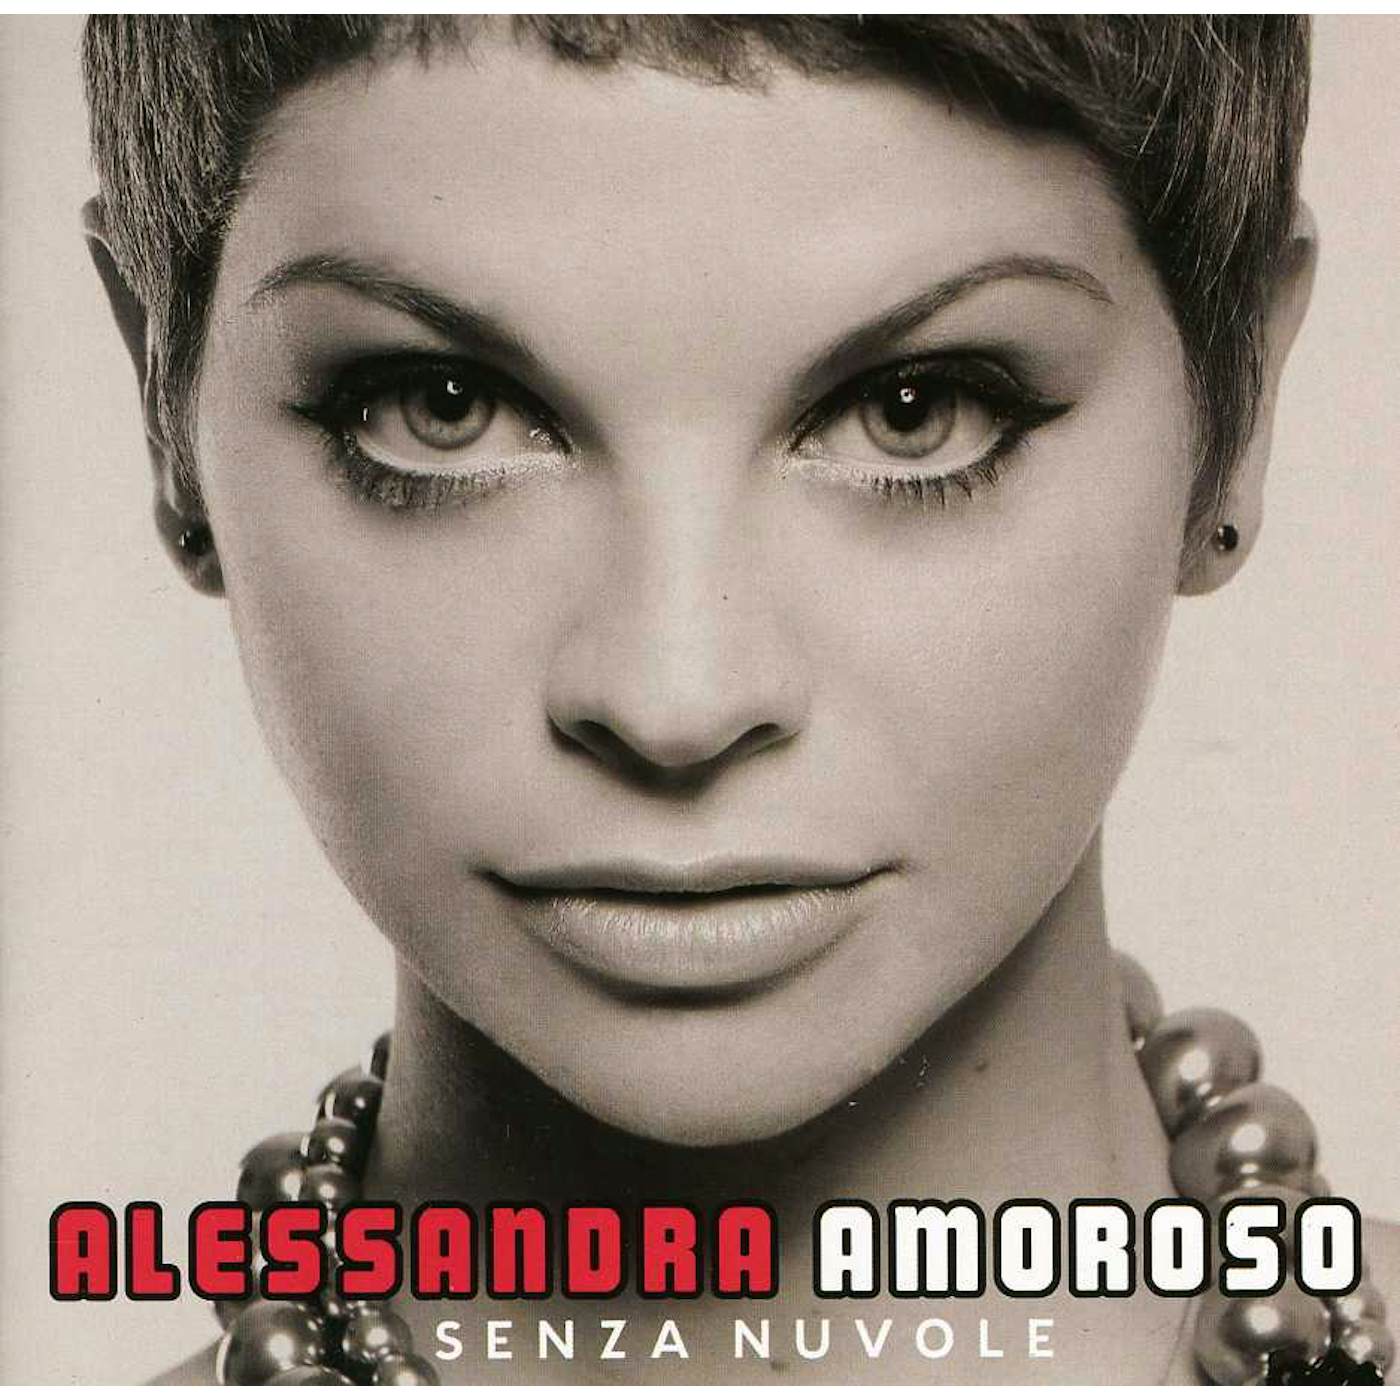 Alessandra Amoroso SENZA NUVOLE CD